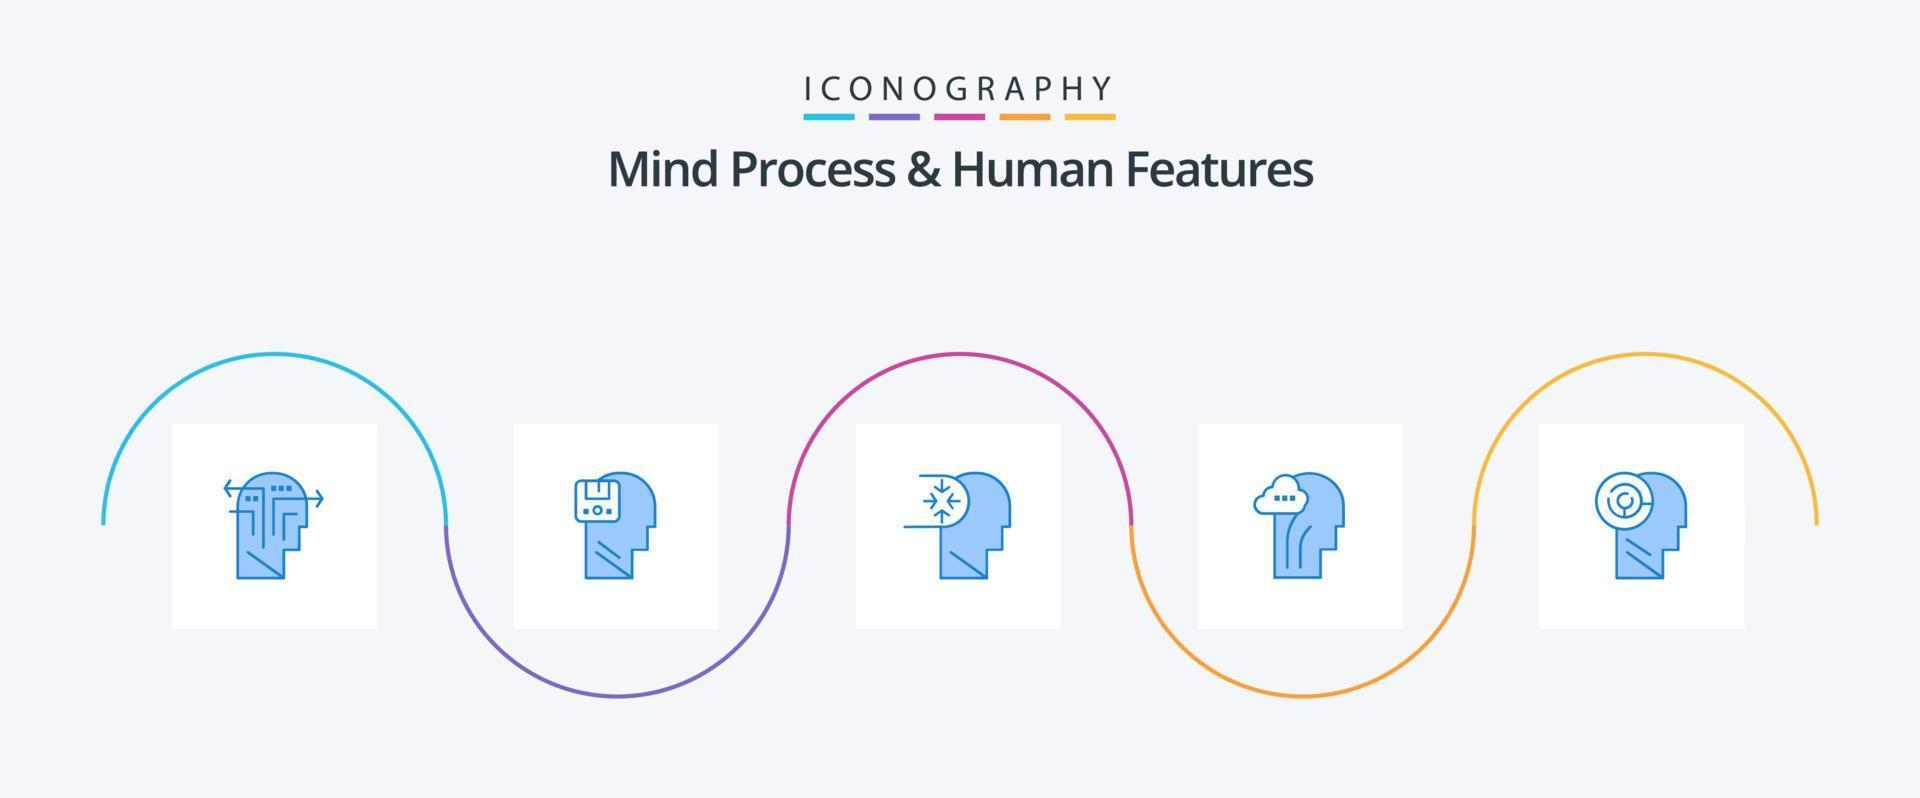 proceso mental y características humanas paquete de iconos azul 5 que incluye la cabeza. mente. masculino. cerebro. cabeza vector